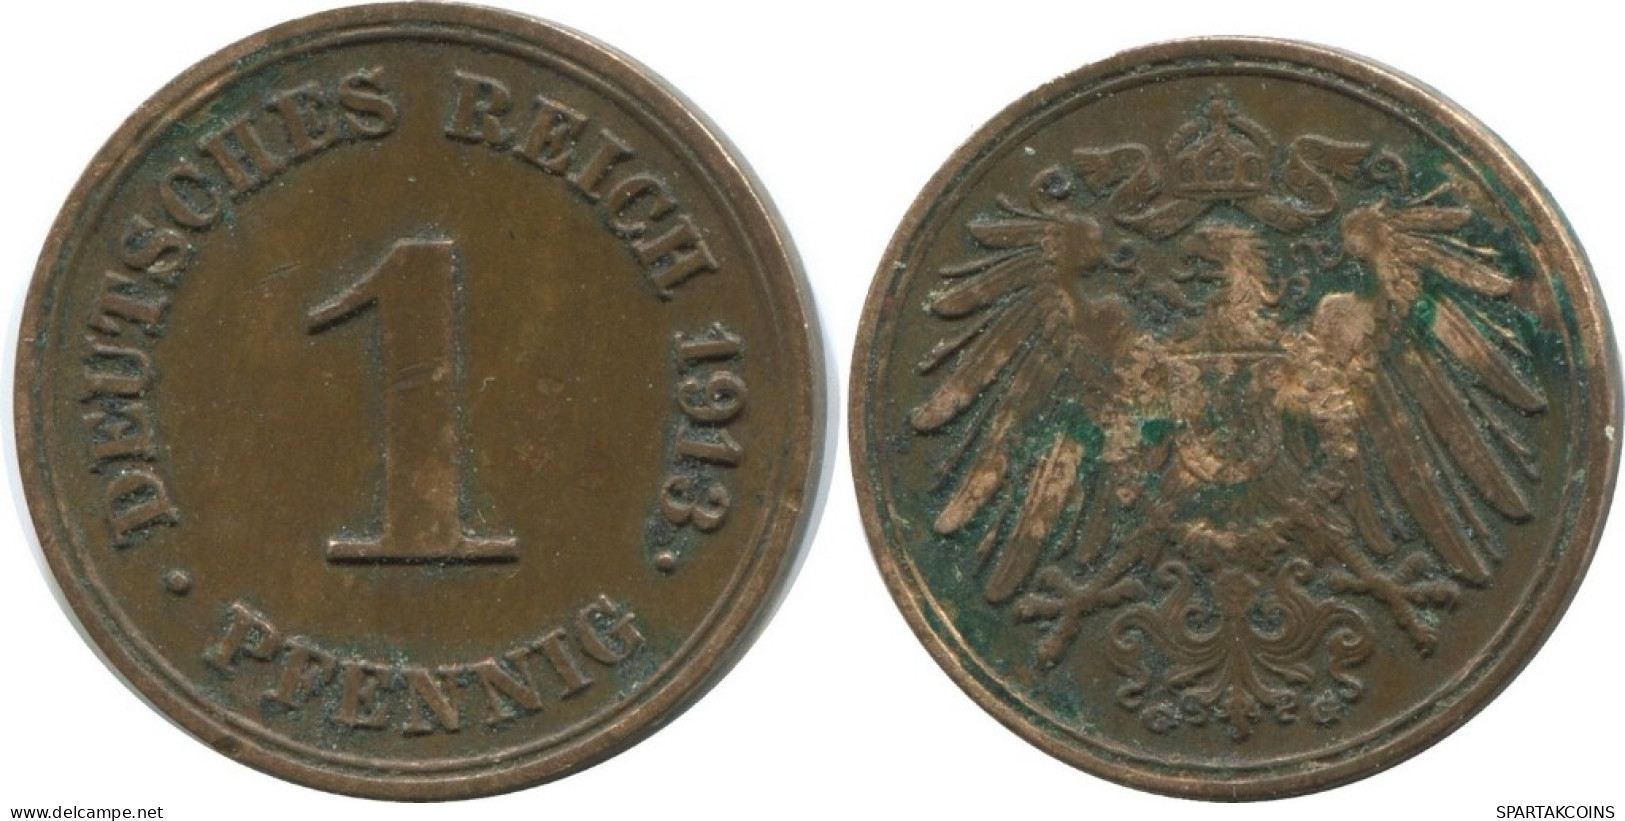 1 PFENNIG 1913 G ALEMANIA Moneda GERMANY #AD446.9.E.A - 1 Pfennig